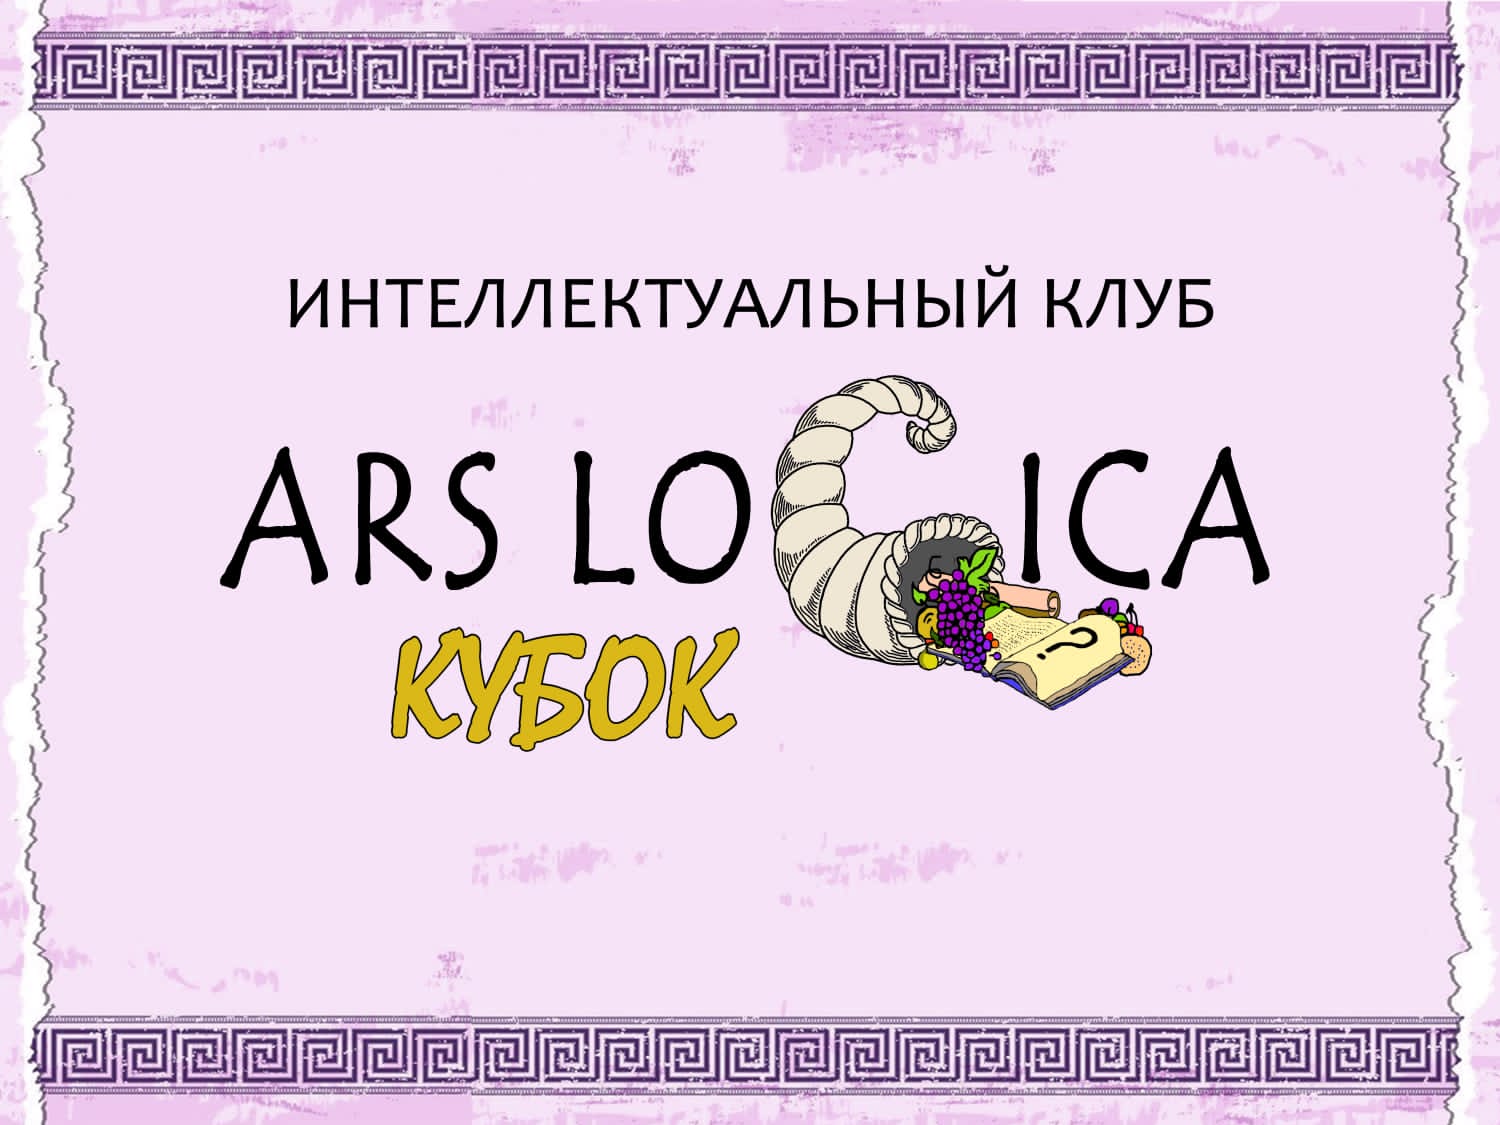 Кубковая игра интеллектуального клуба ARS LOGICA.